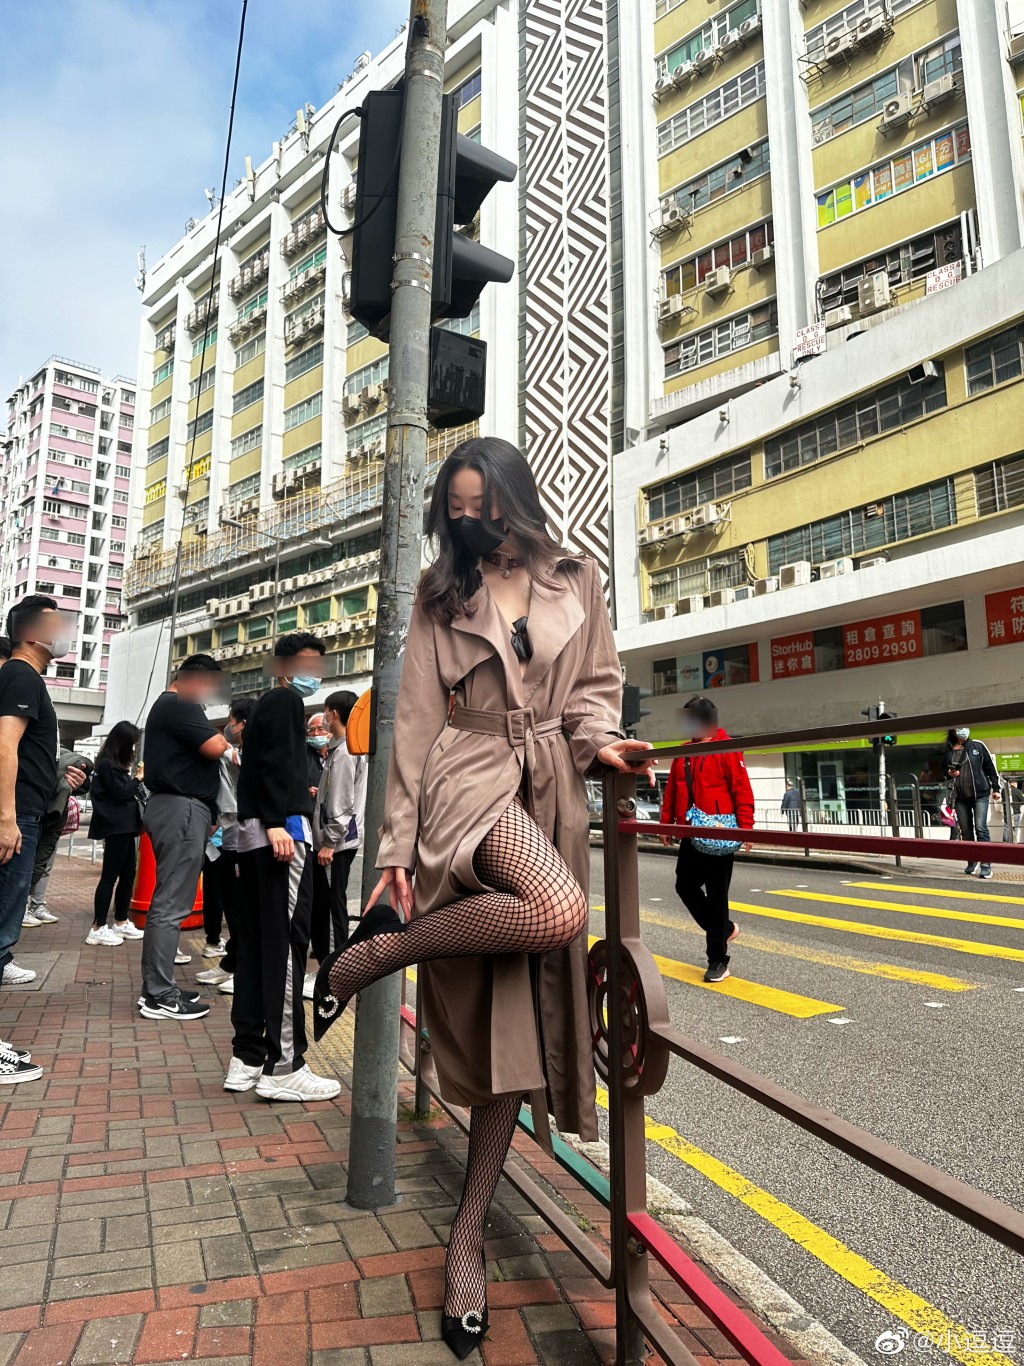 香港街头也照拍性感照。